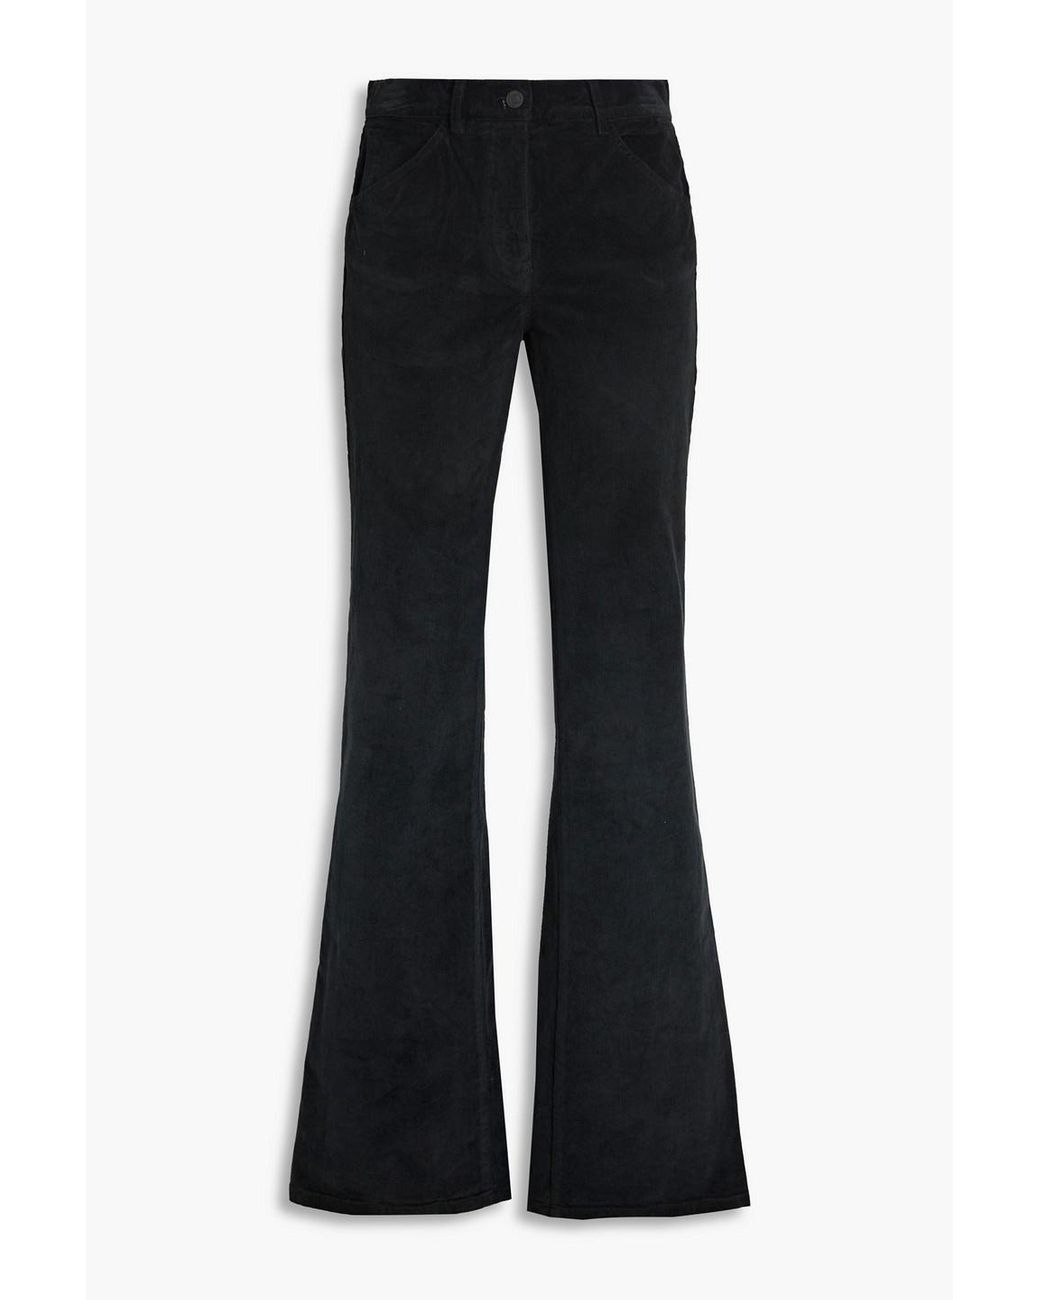 Nili Lotan Celia Cotton-blend Corduroy Bootcut Pants in Black